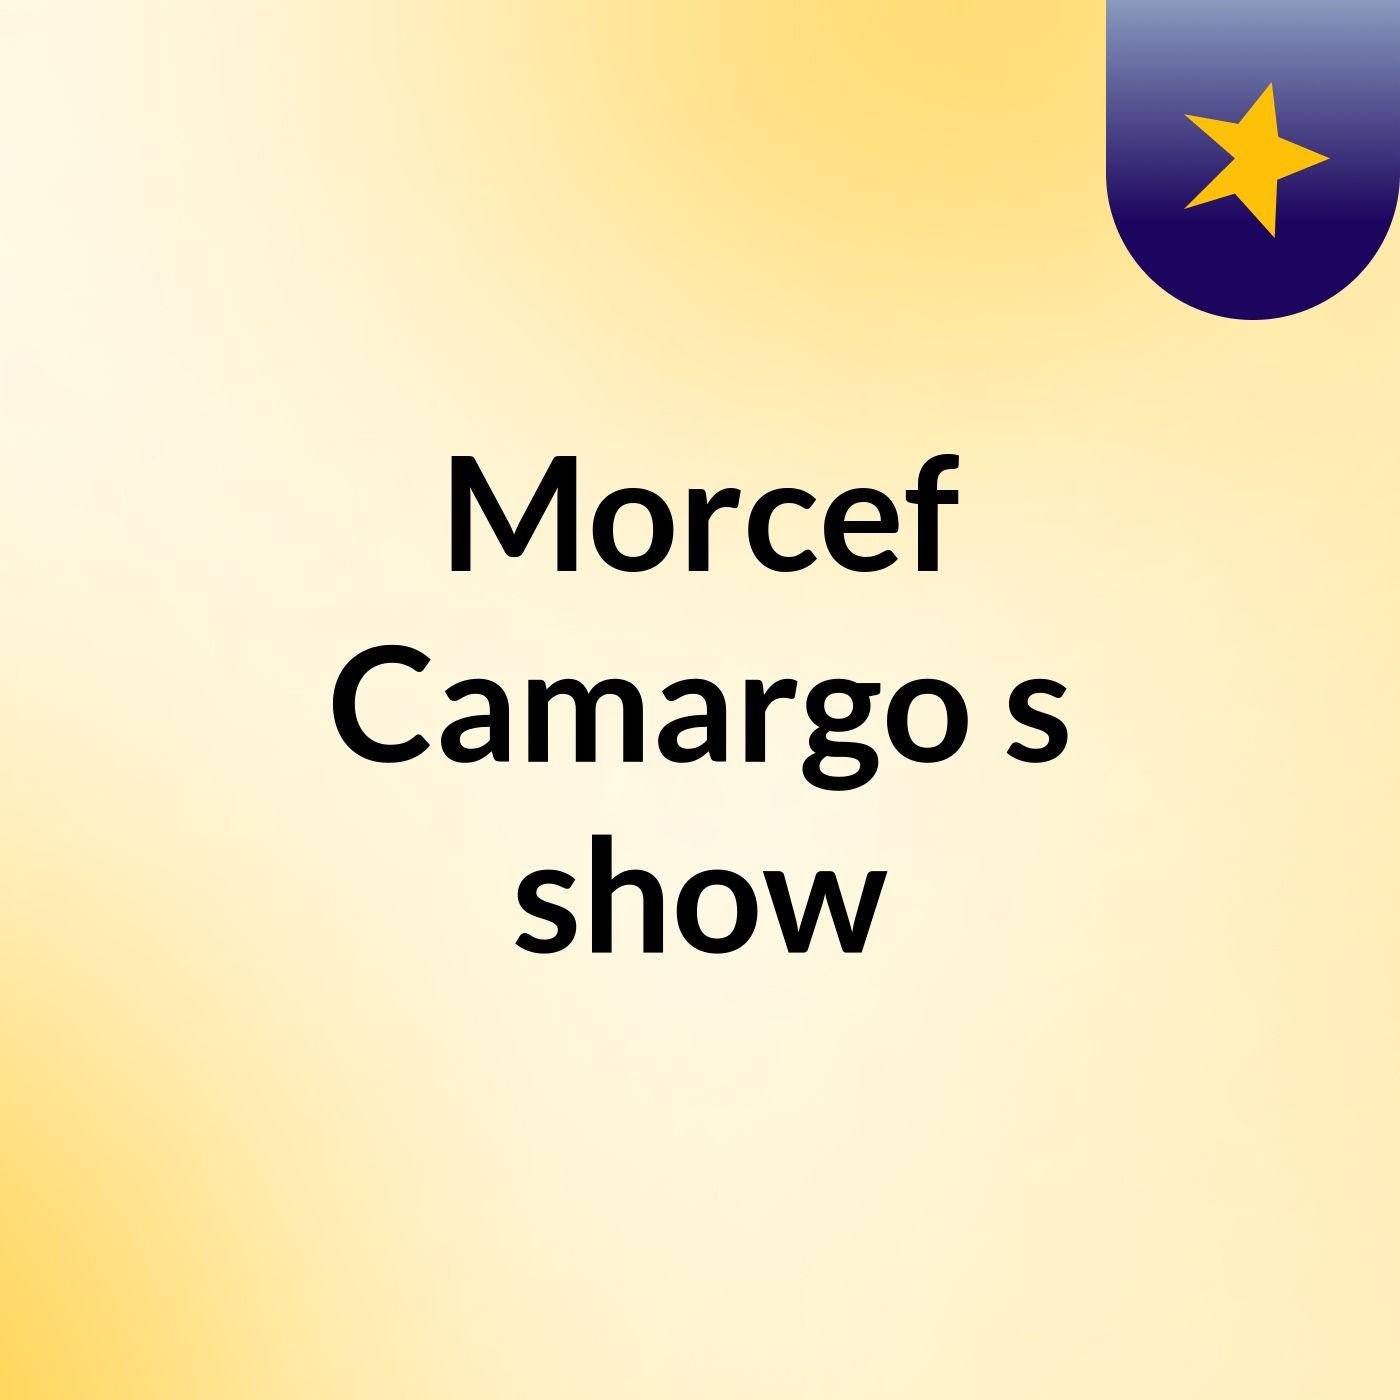 Morcef Camargo's show